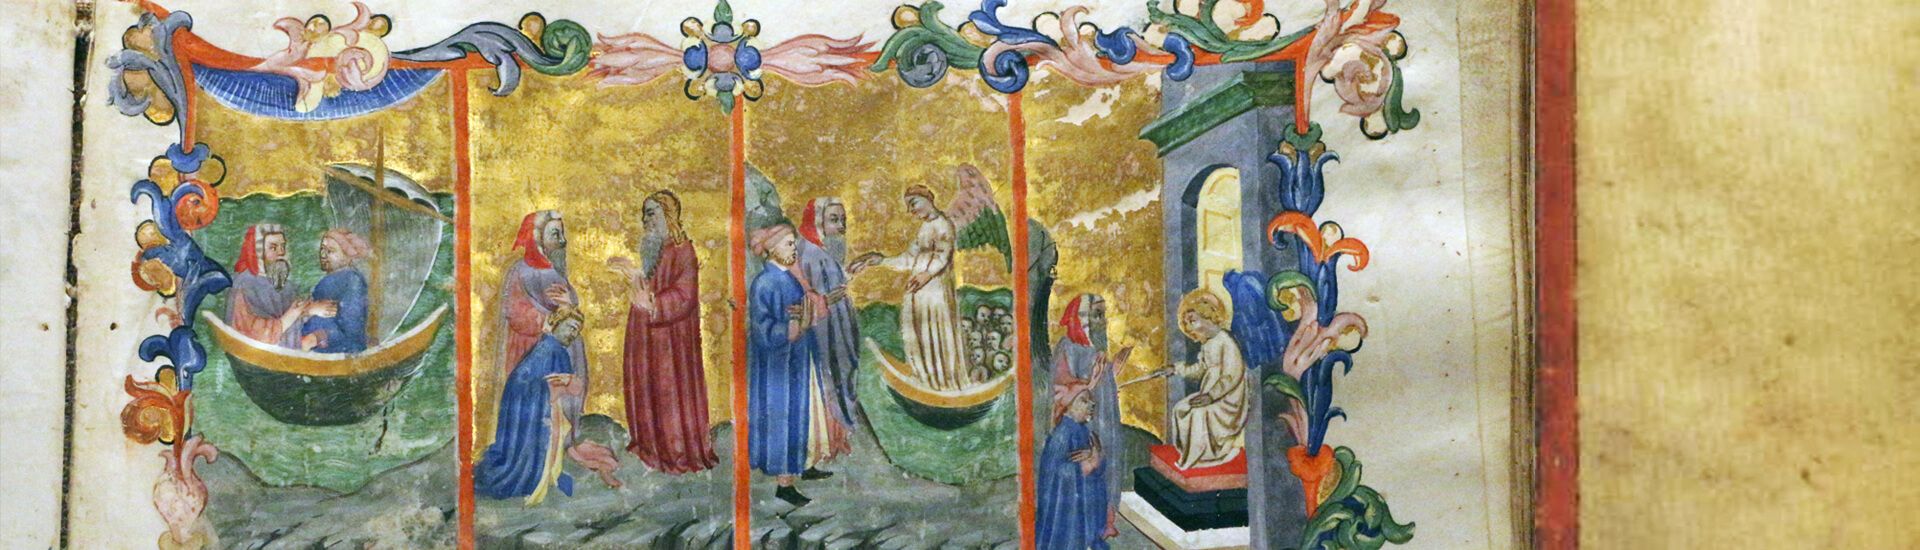 Firenze, commedia di dante, codice miniato da simone camaldolese e aiuti, purgatorio canto I, 1398, tempi 1, c. 32r, 02